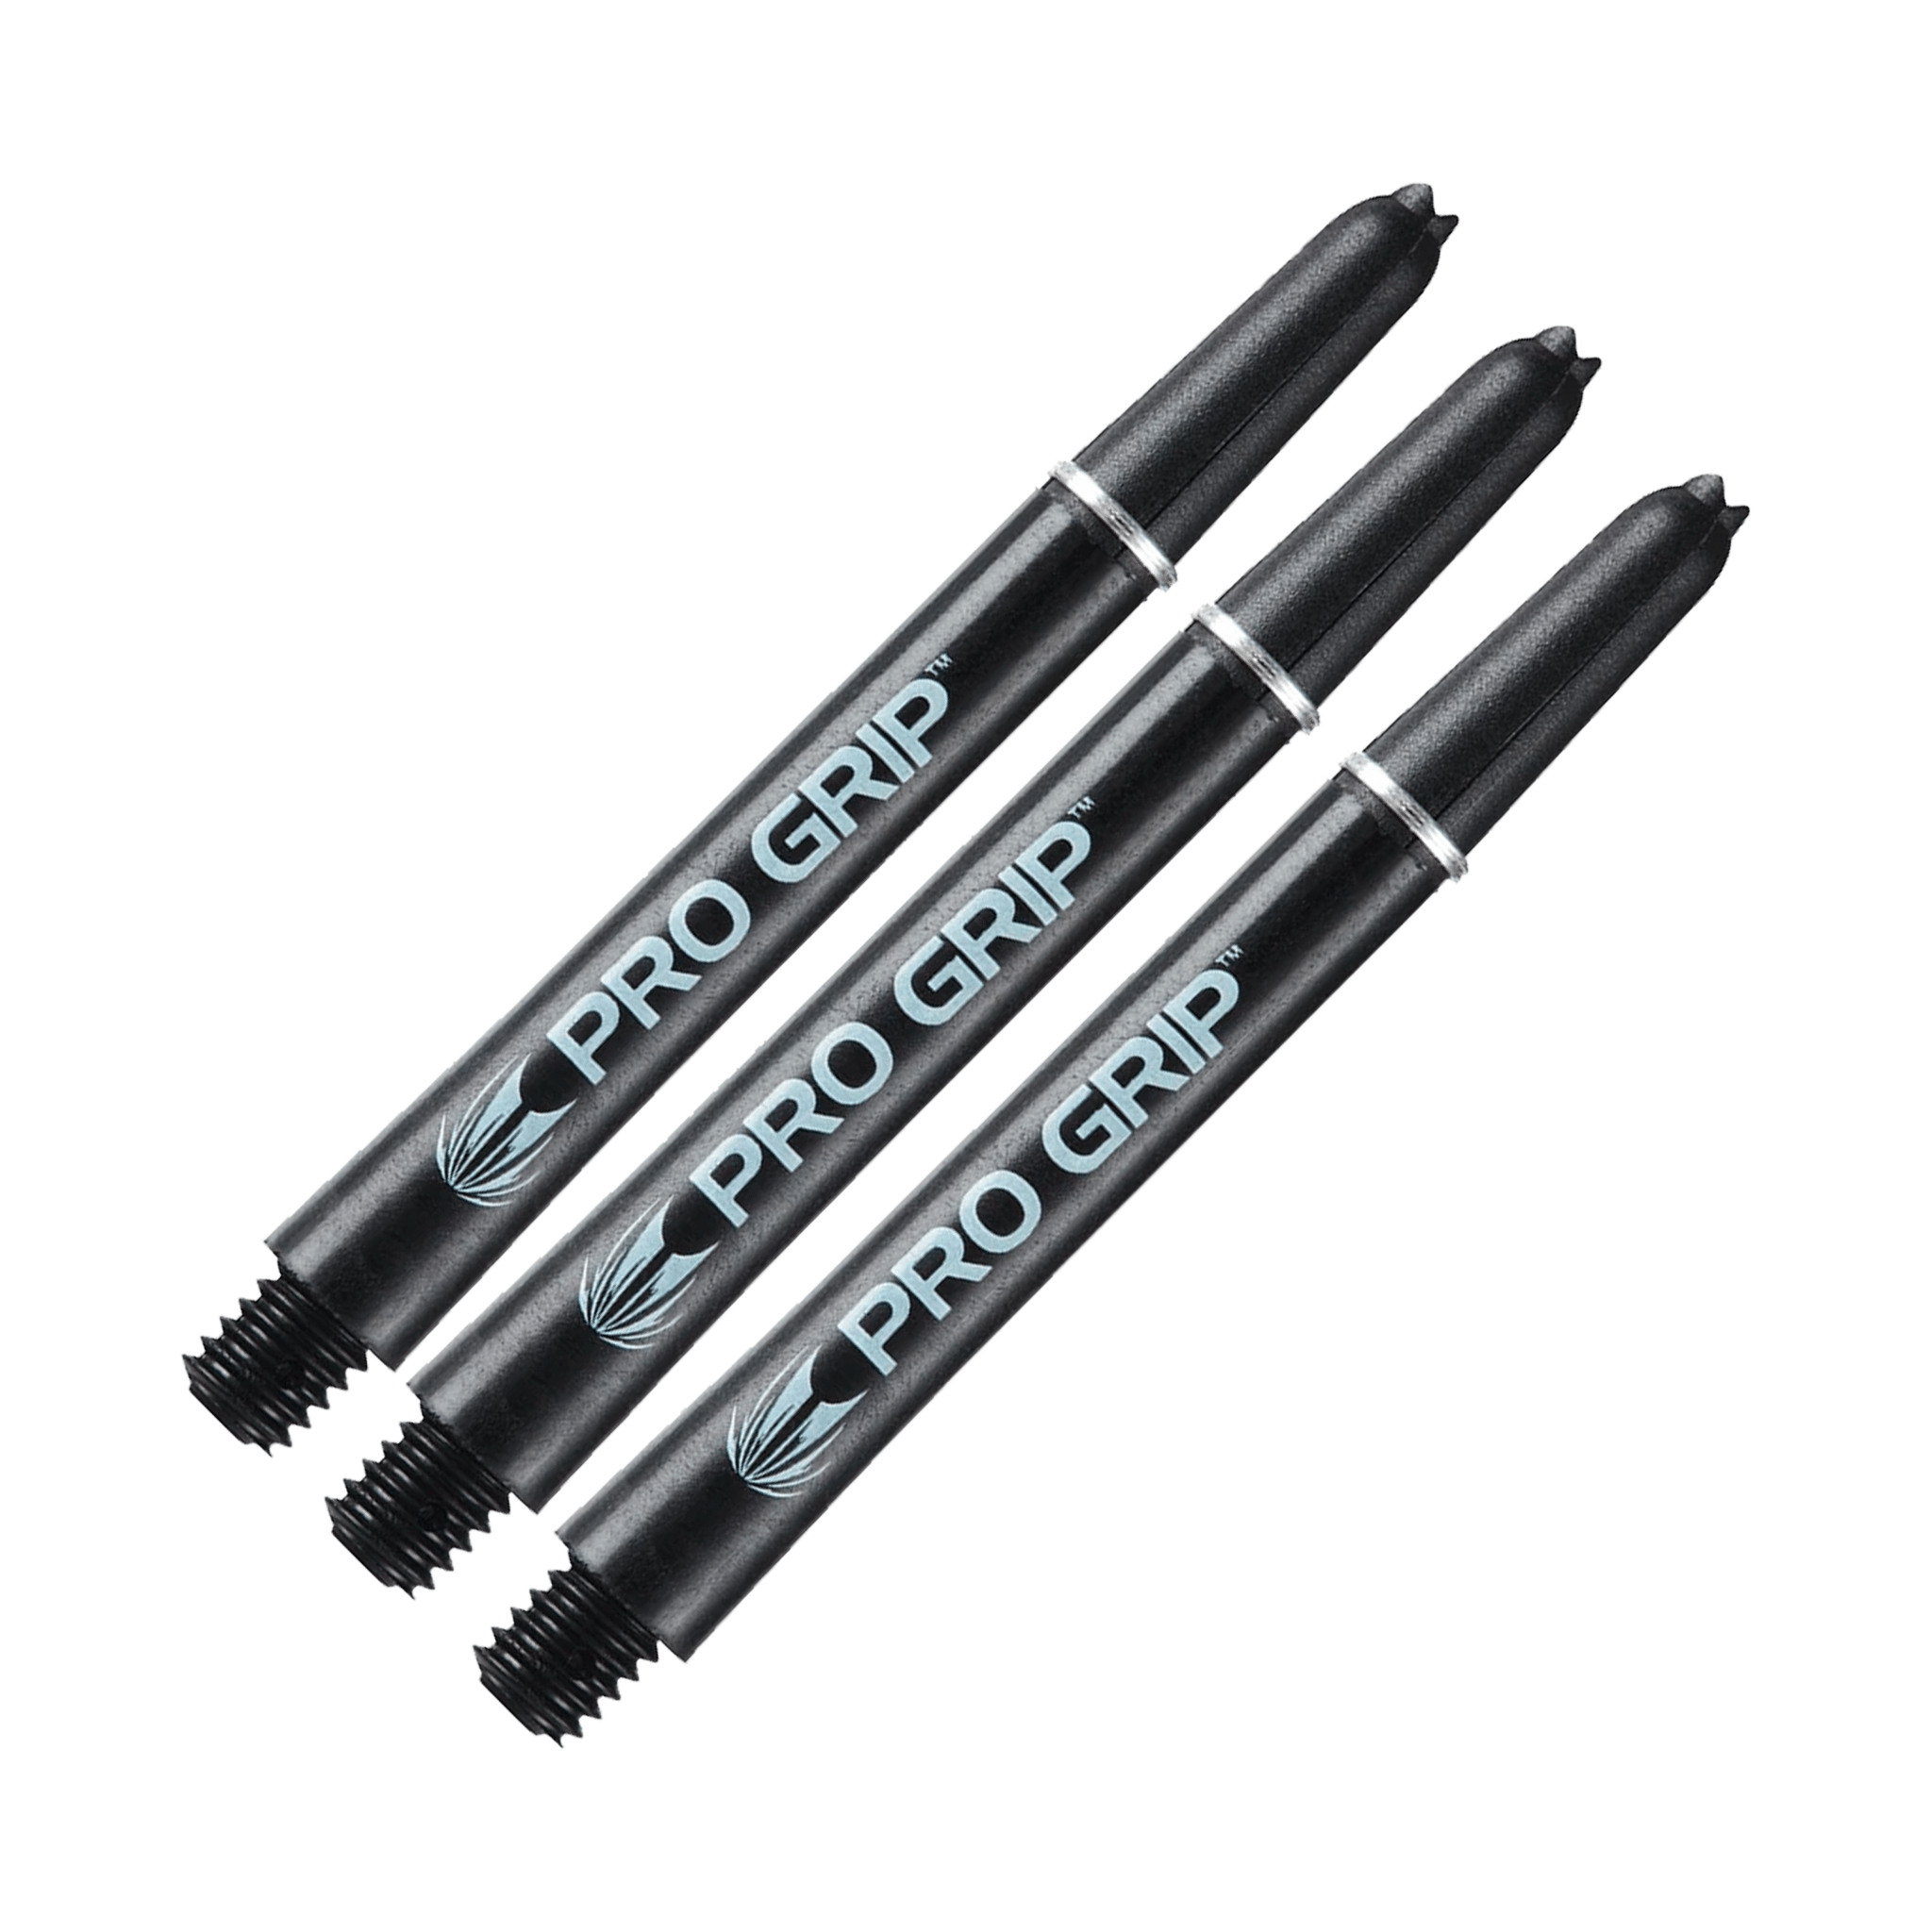 Target Pro Grip Multi Pack - Nylon Dart Shafts (3 Sets) Black / Medium (48mm) Shafts